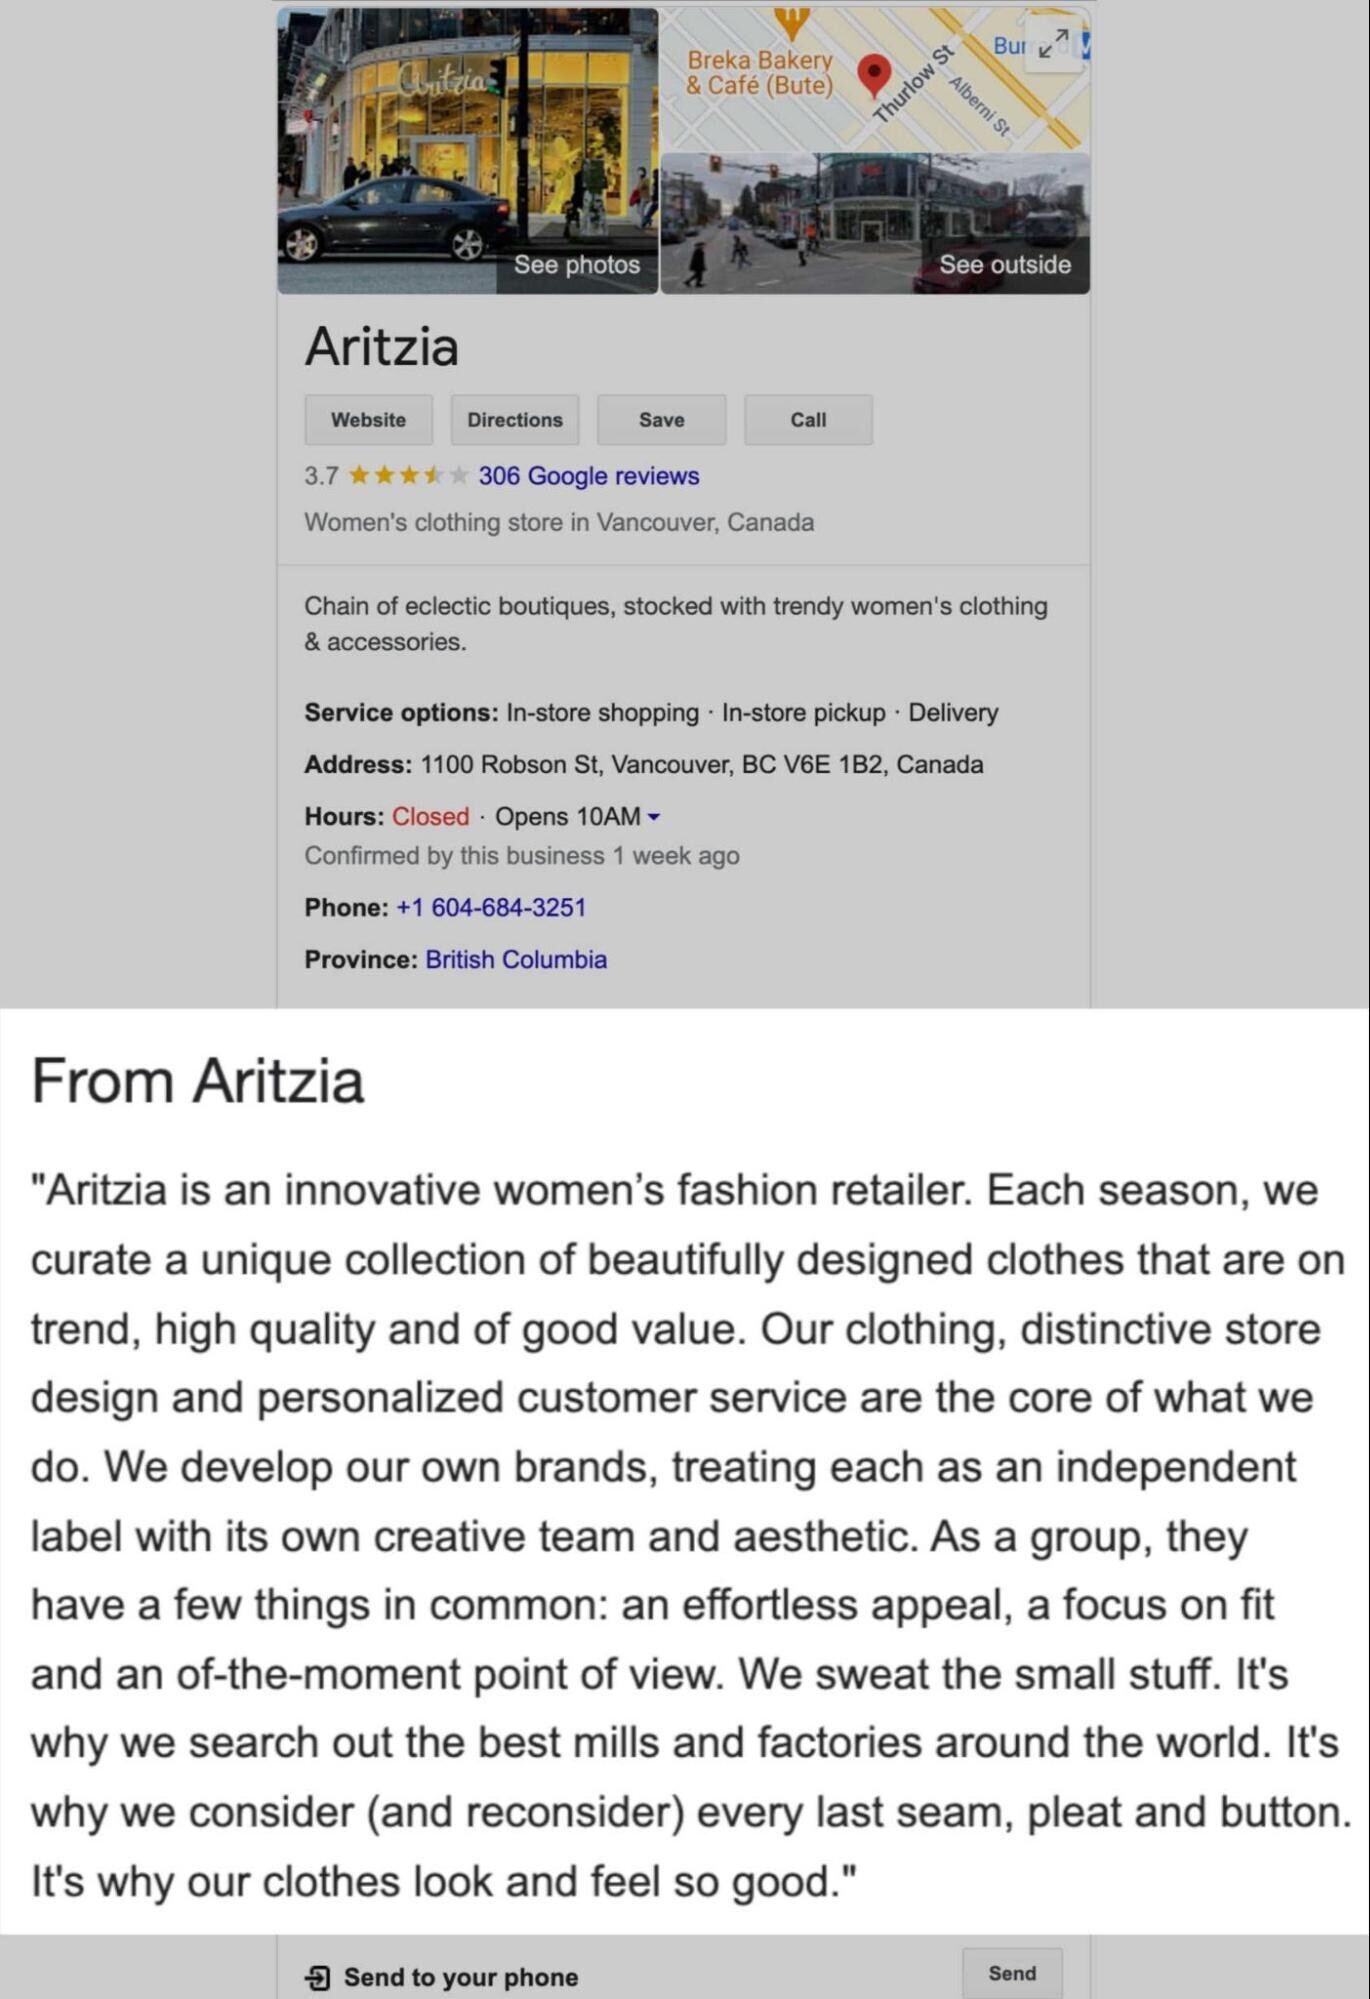 Descrição do negócio Aritzia